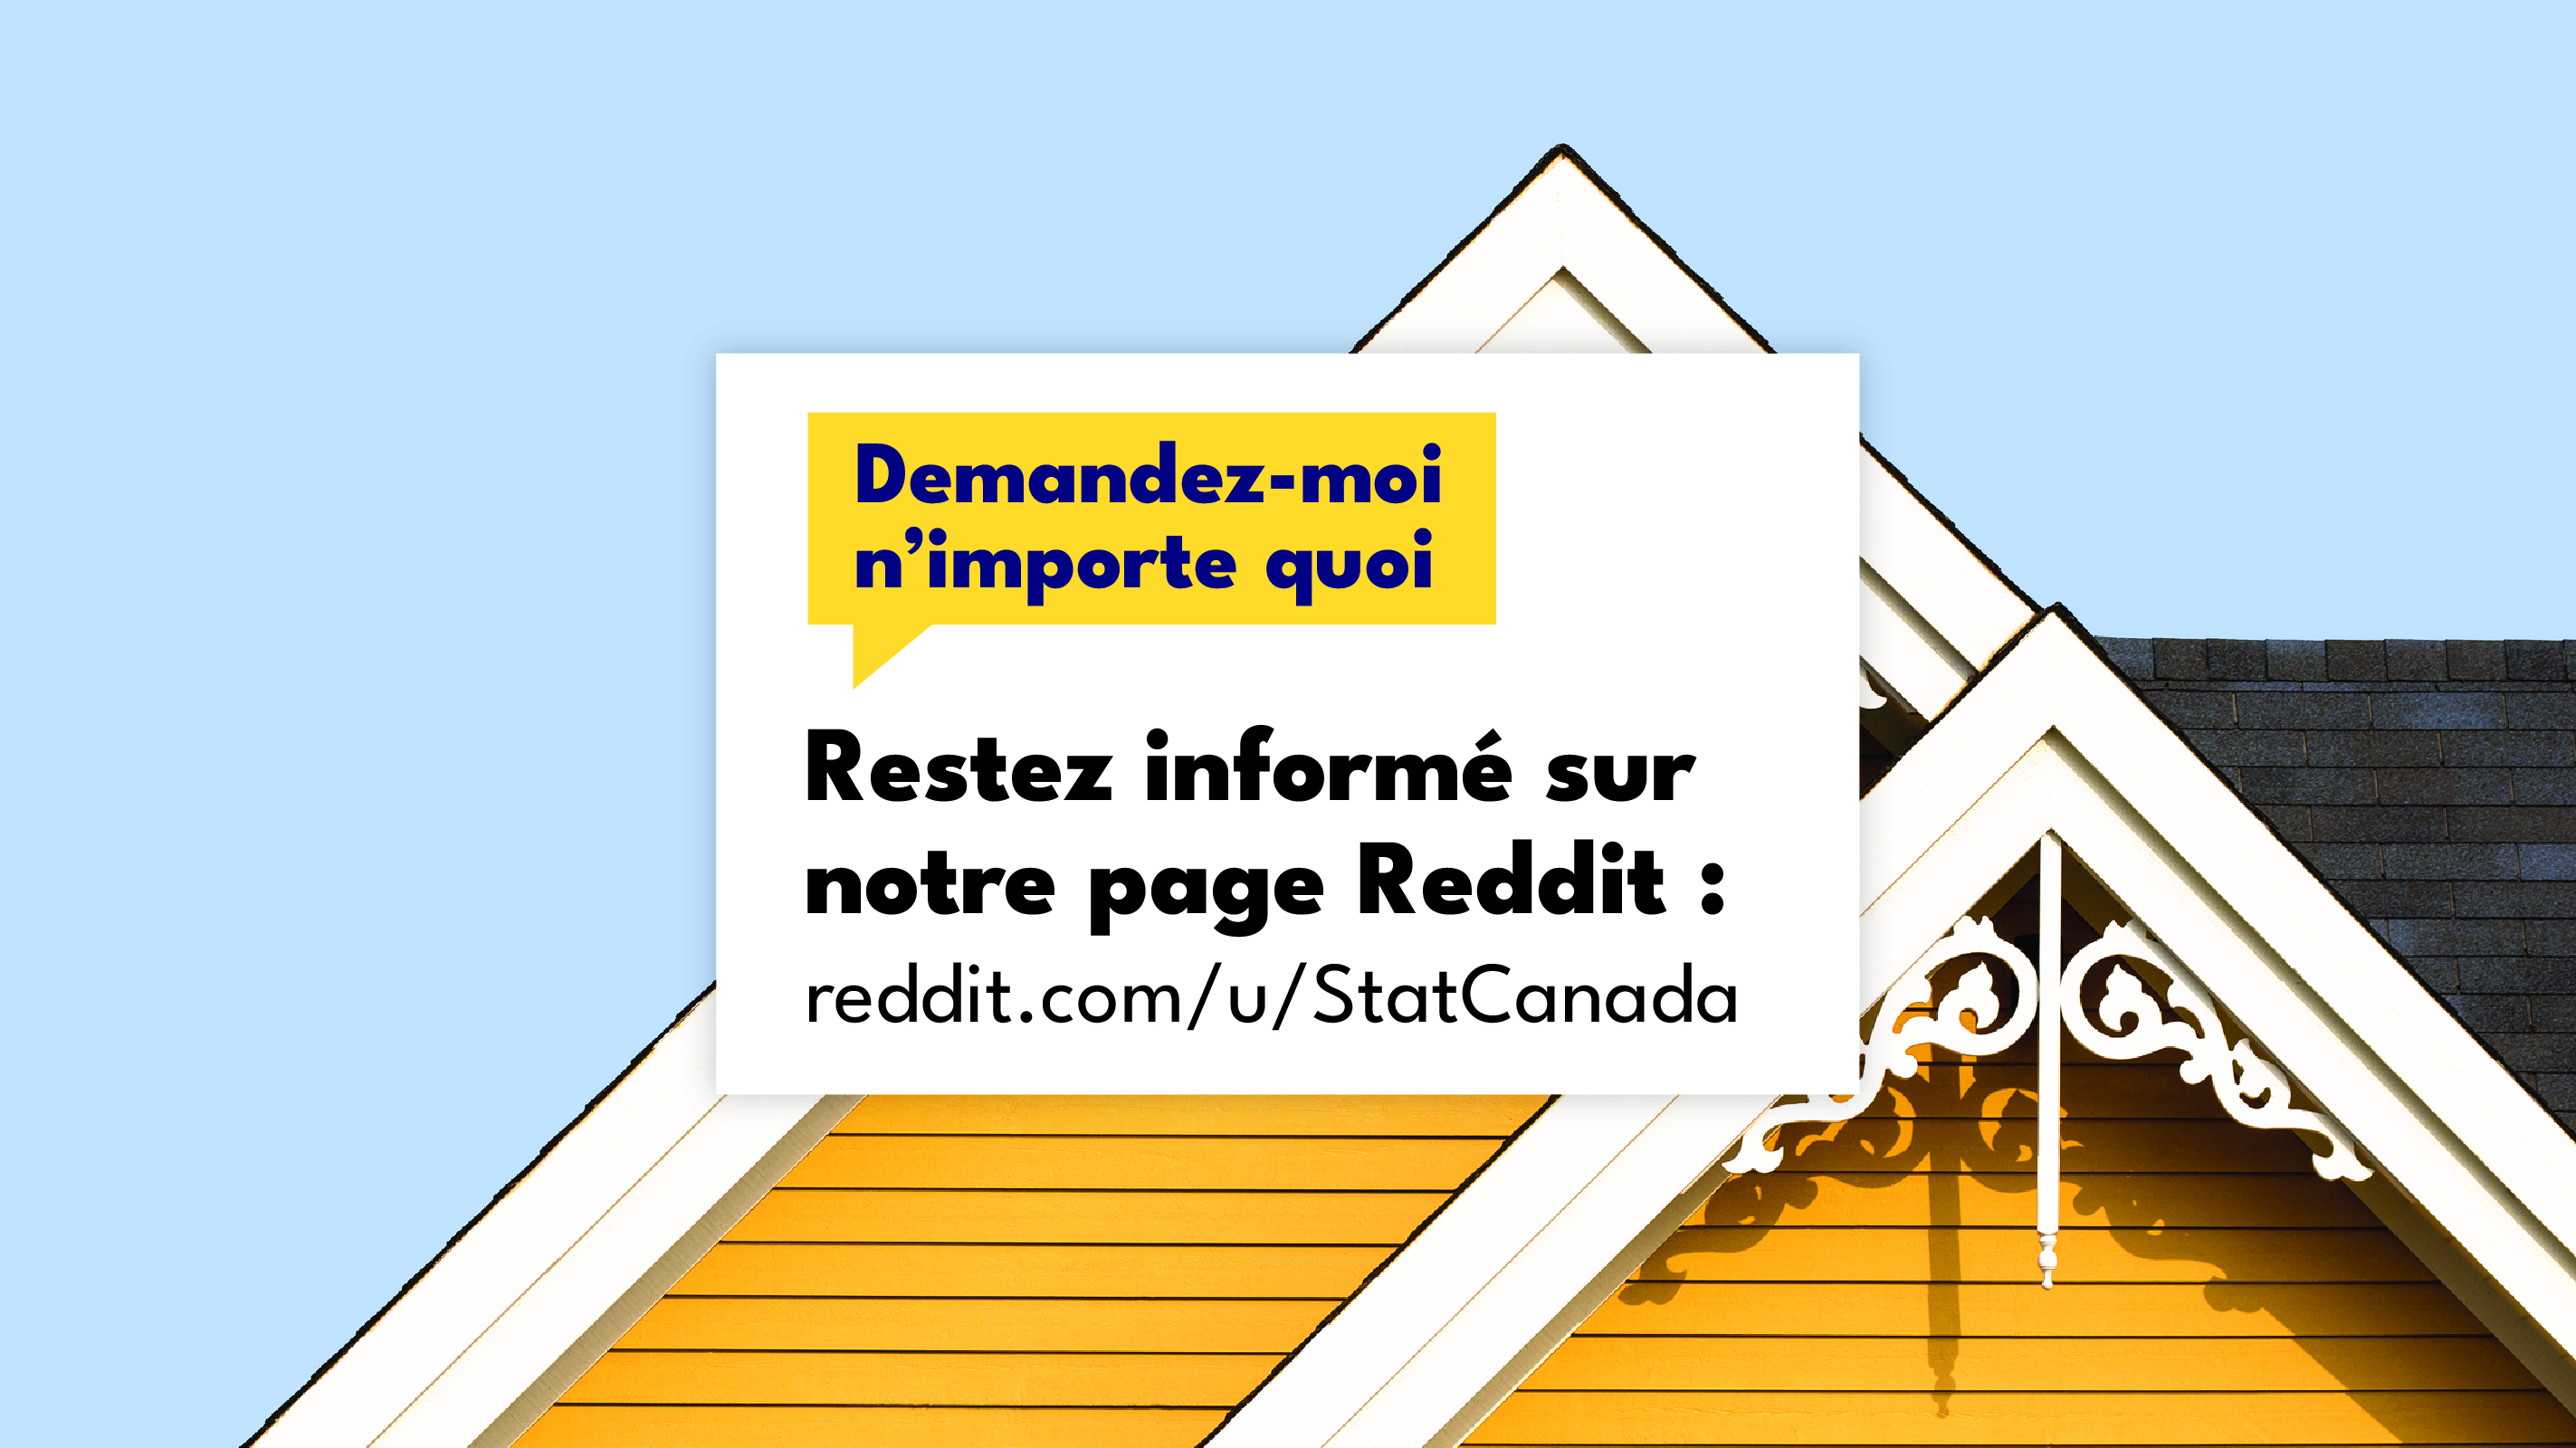 Une image d’une maison jaune « Demandez-nous n’importe quoi! Restez informé sur notre page Reddit : reddit.com/u/StatCanada ». 